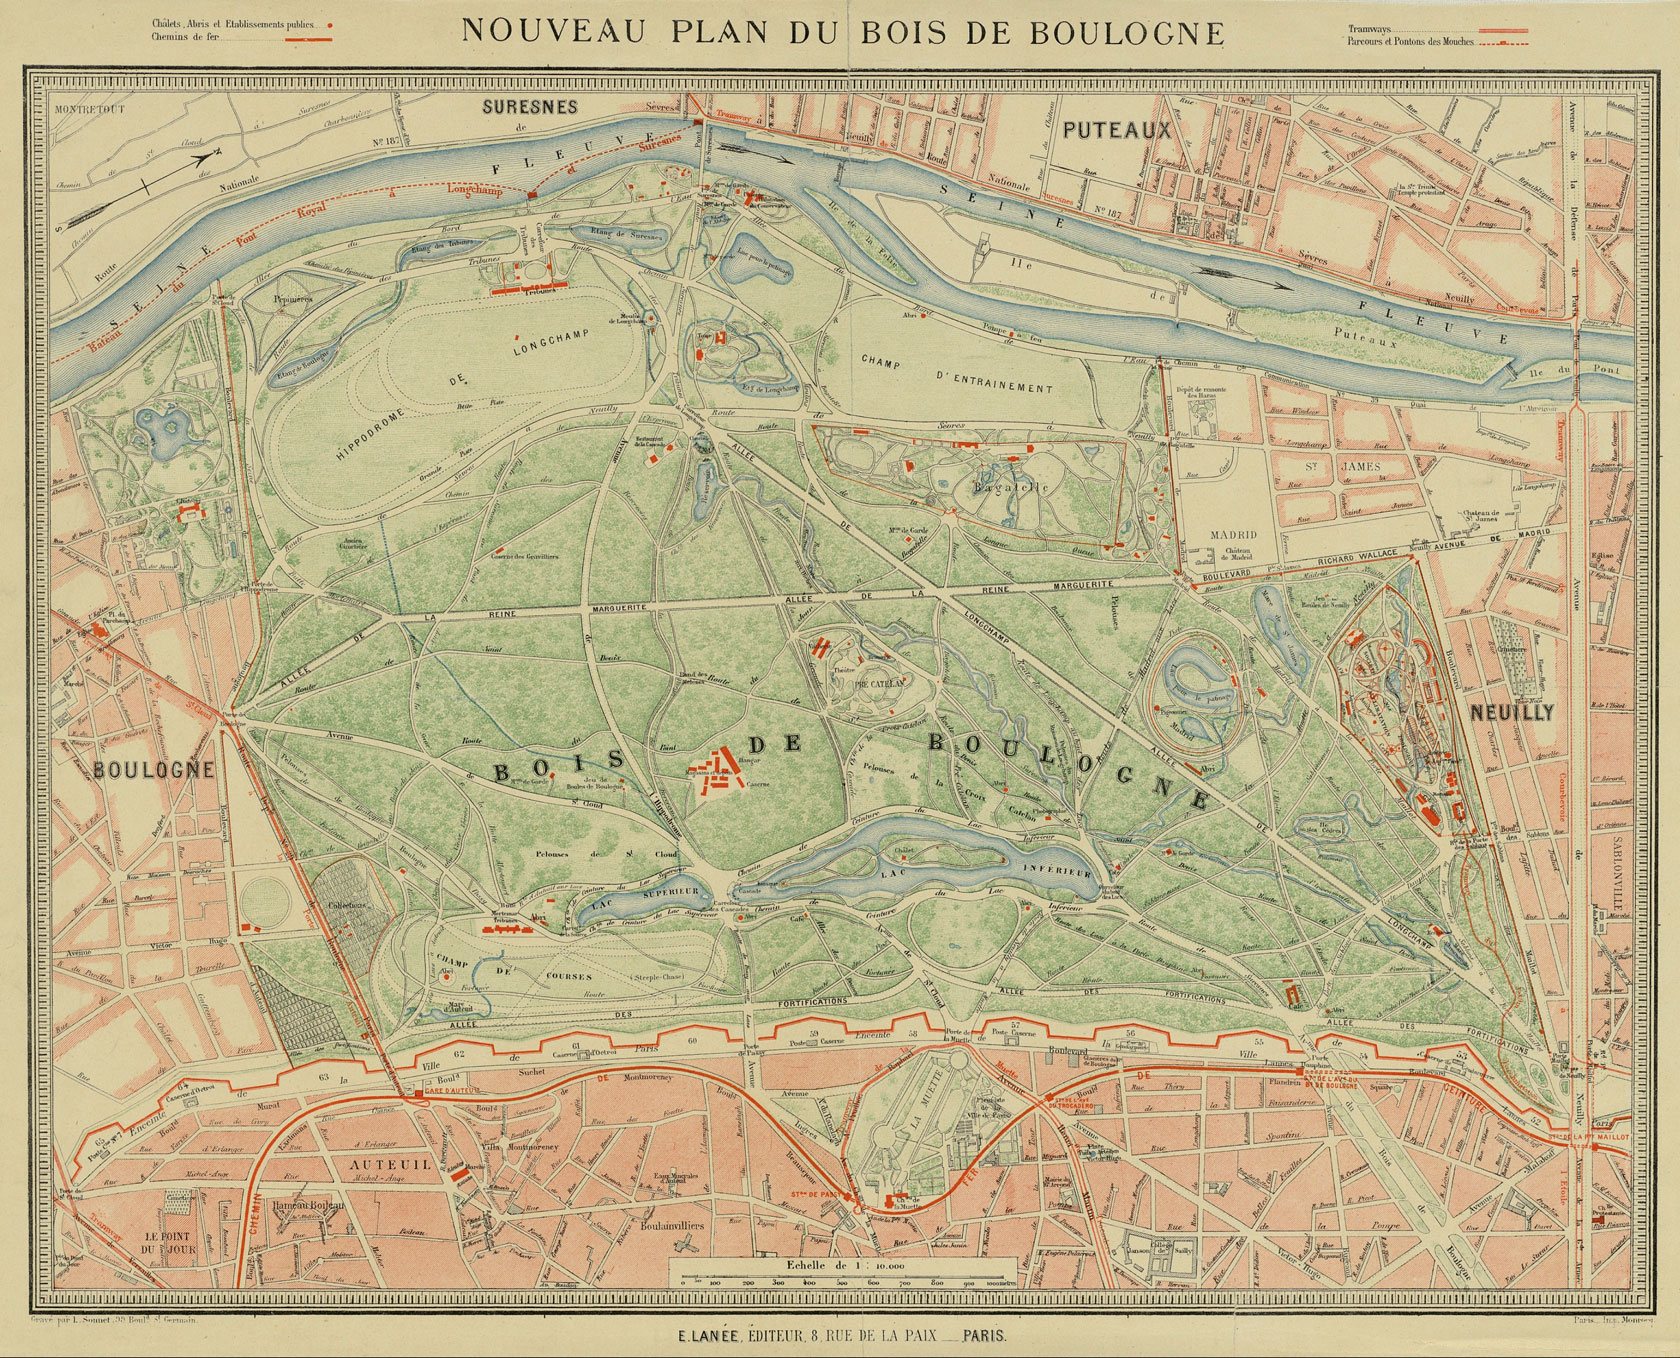 Nouveau plan du Bois de Boulogne, 1925